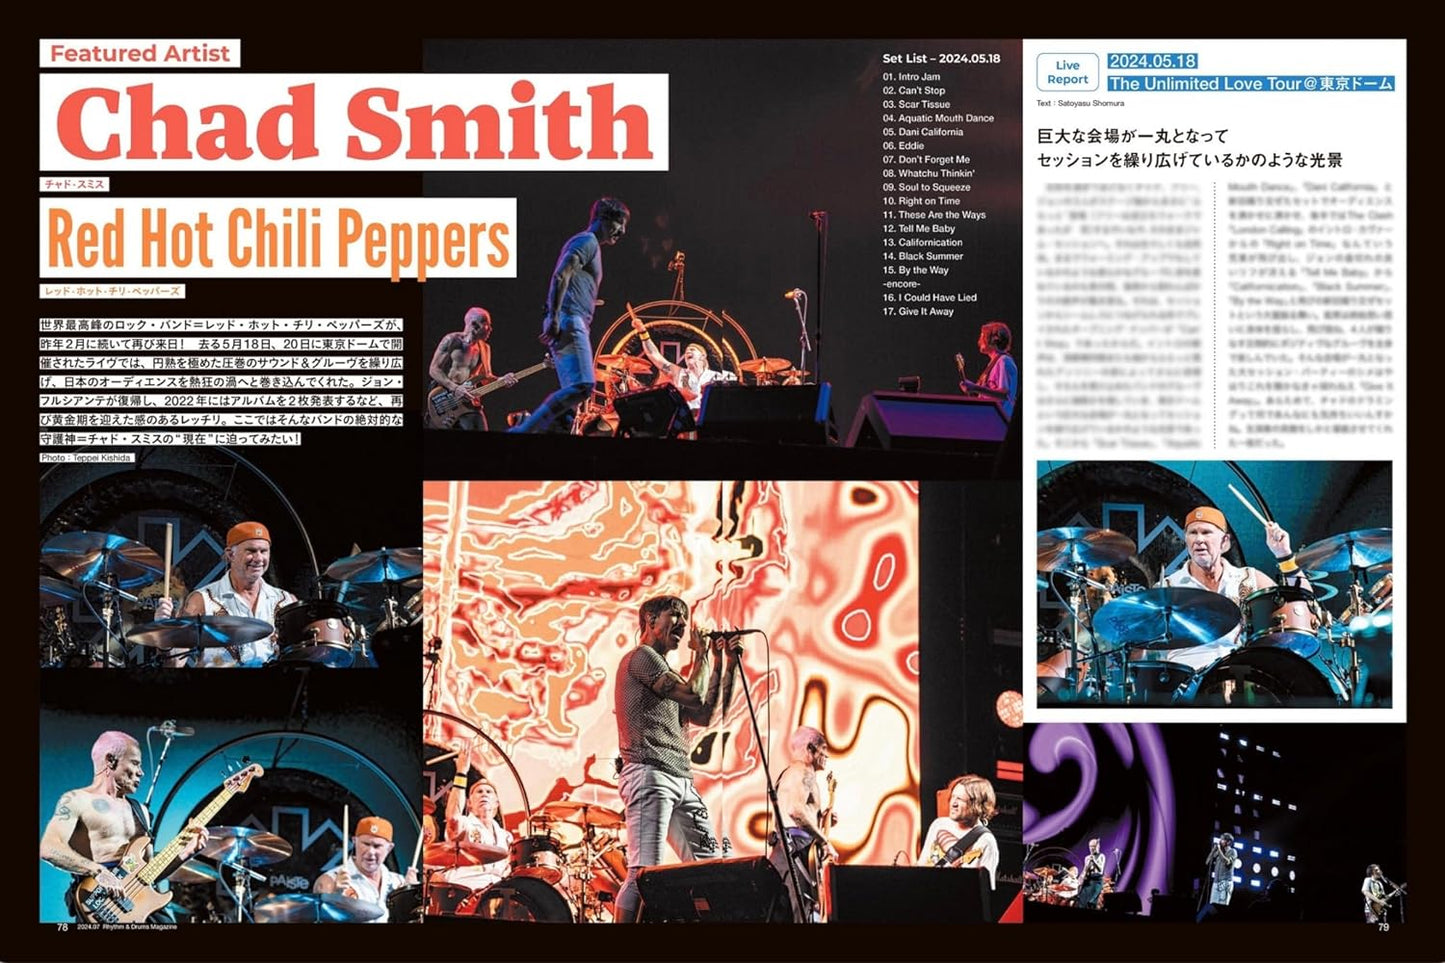 Rhythm & Drums magazine July 2024